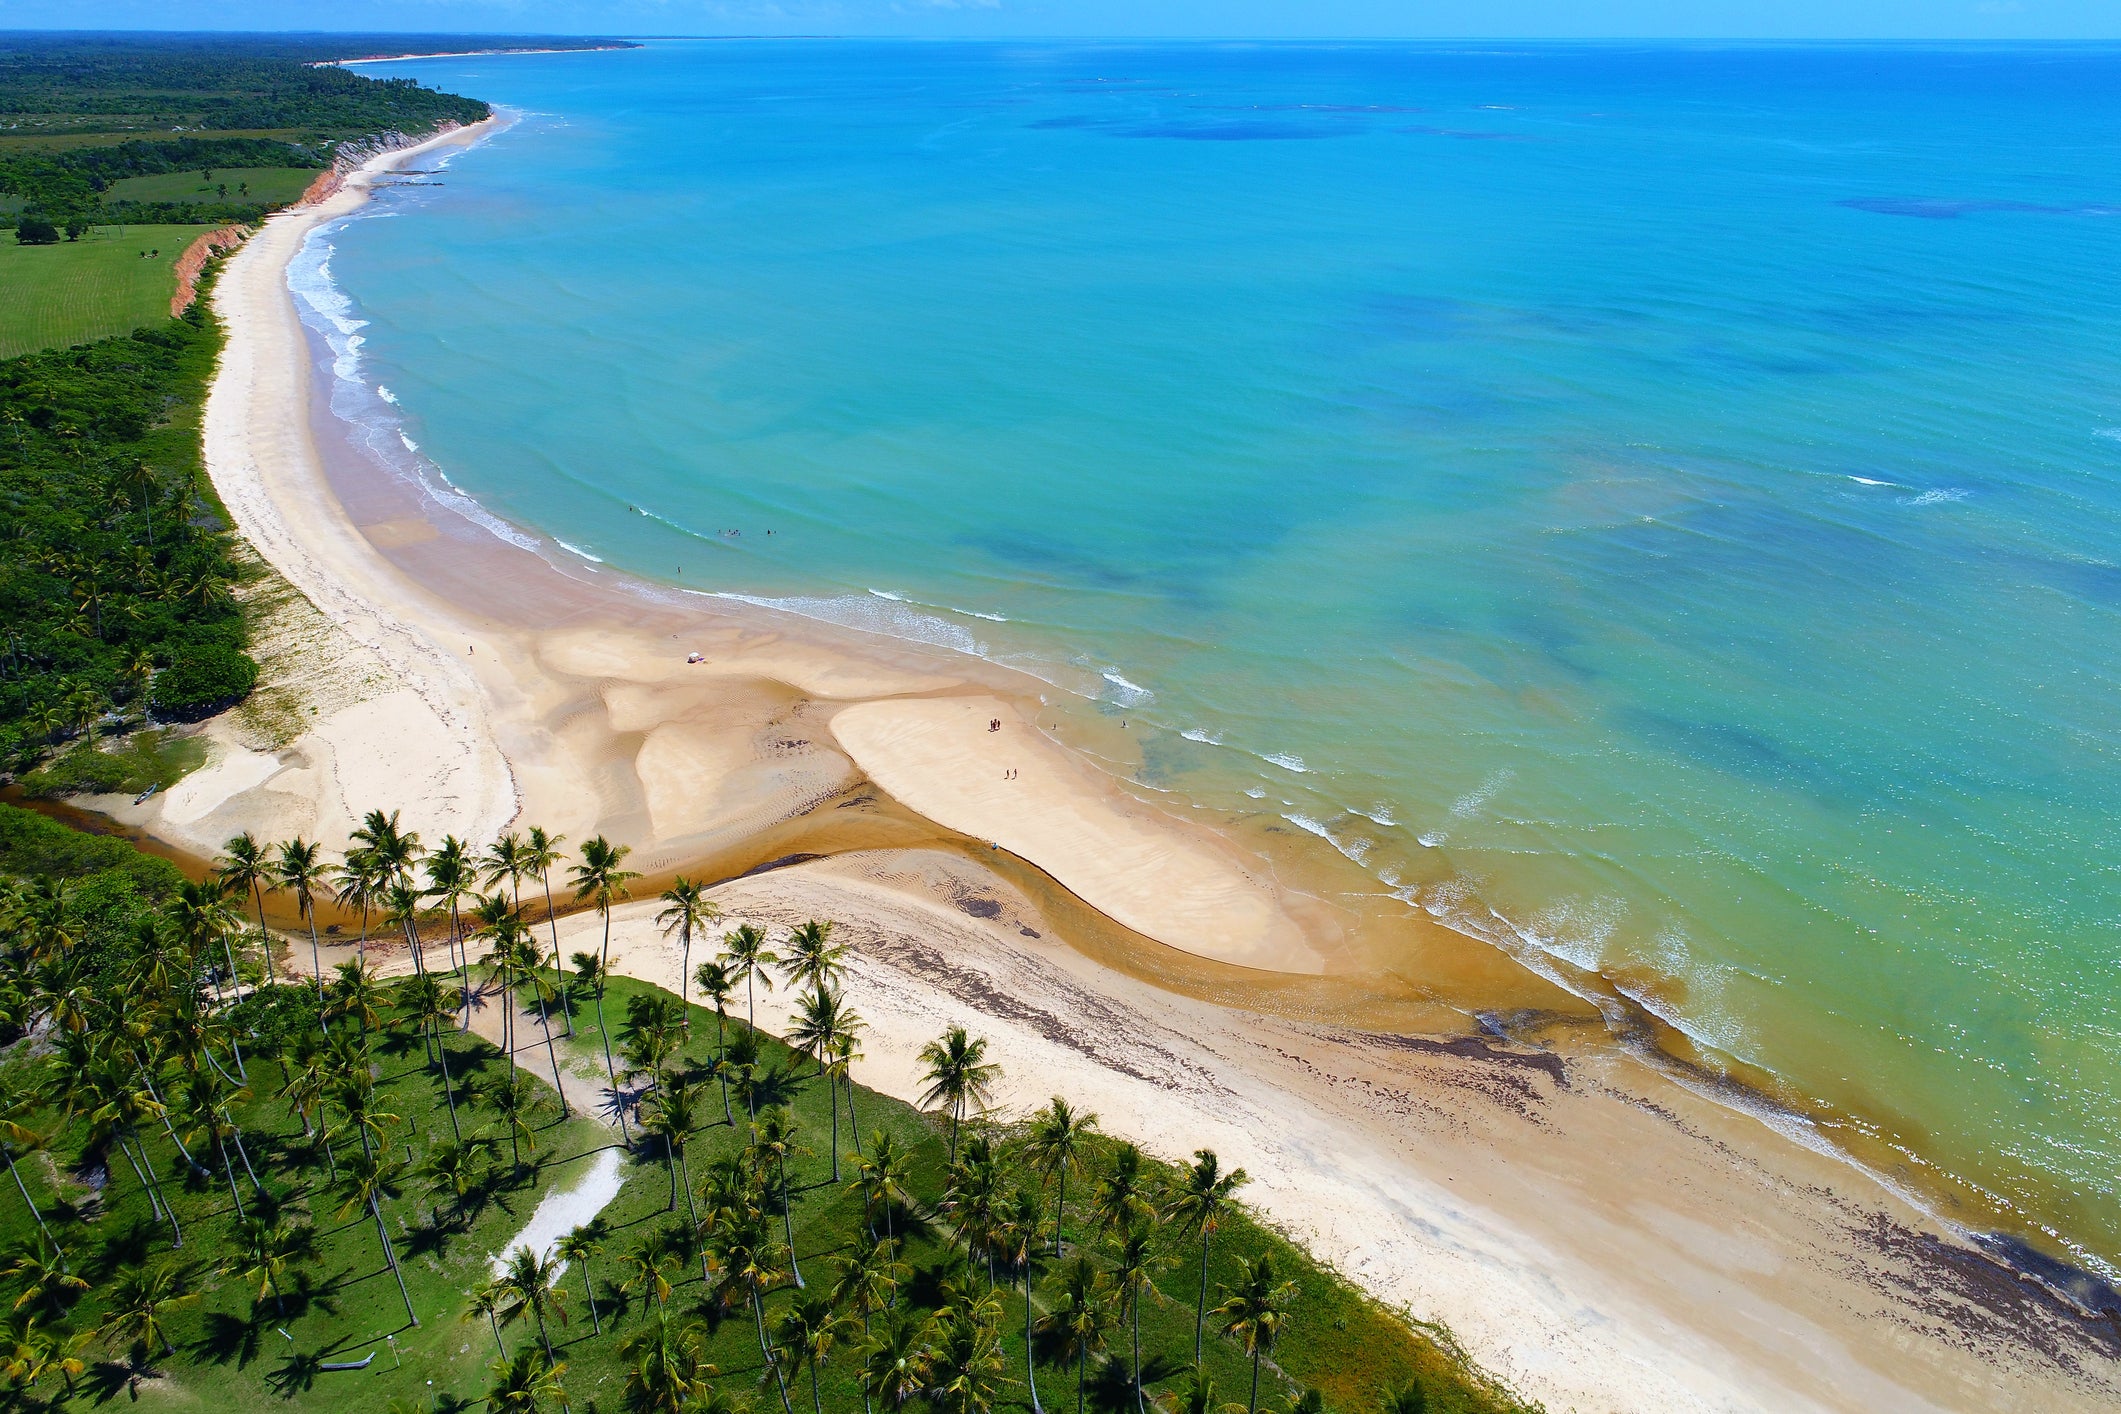 Praia de Cumuruxatiba beach, Bahia, Brazil